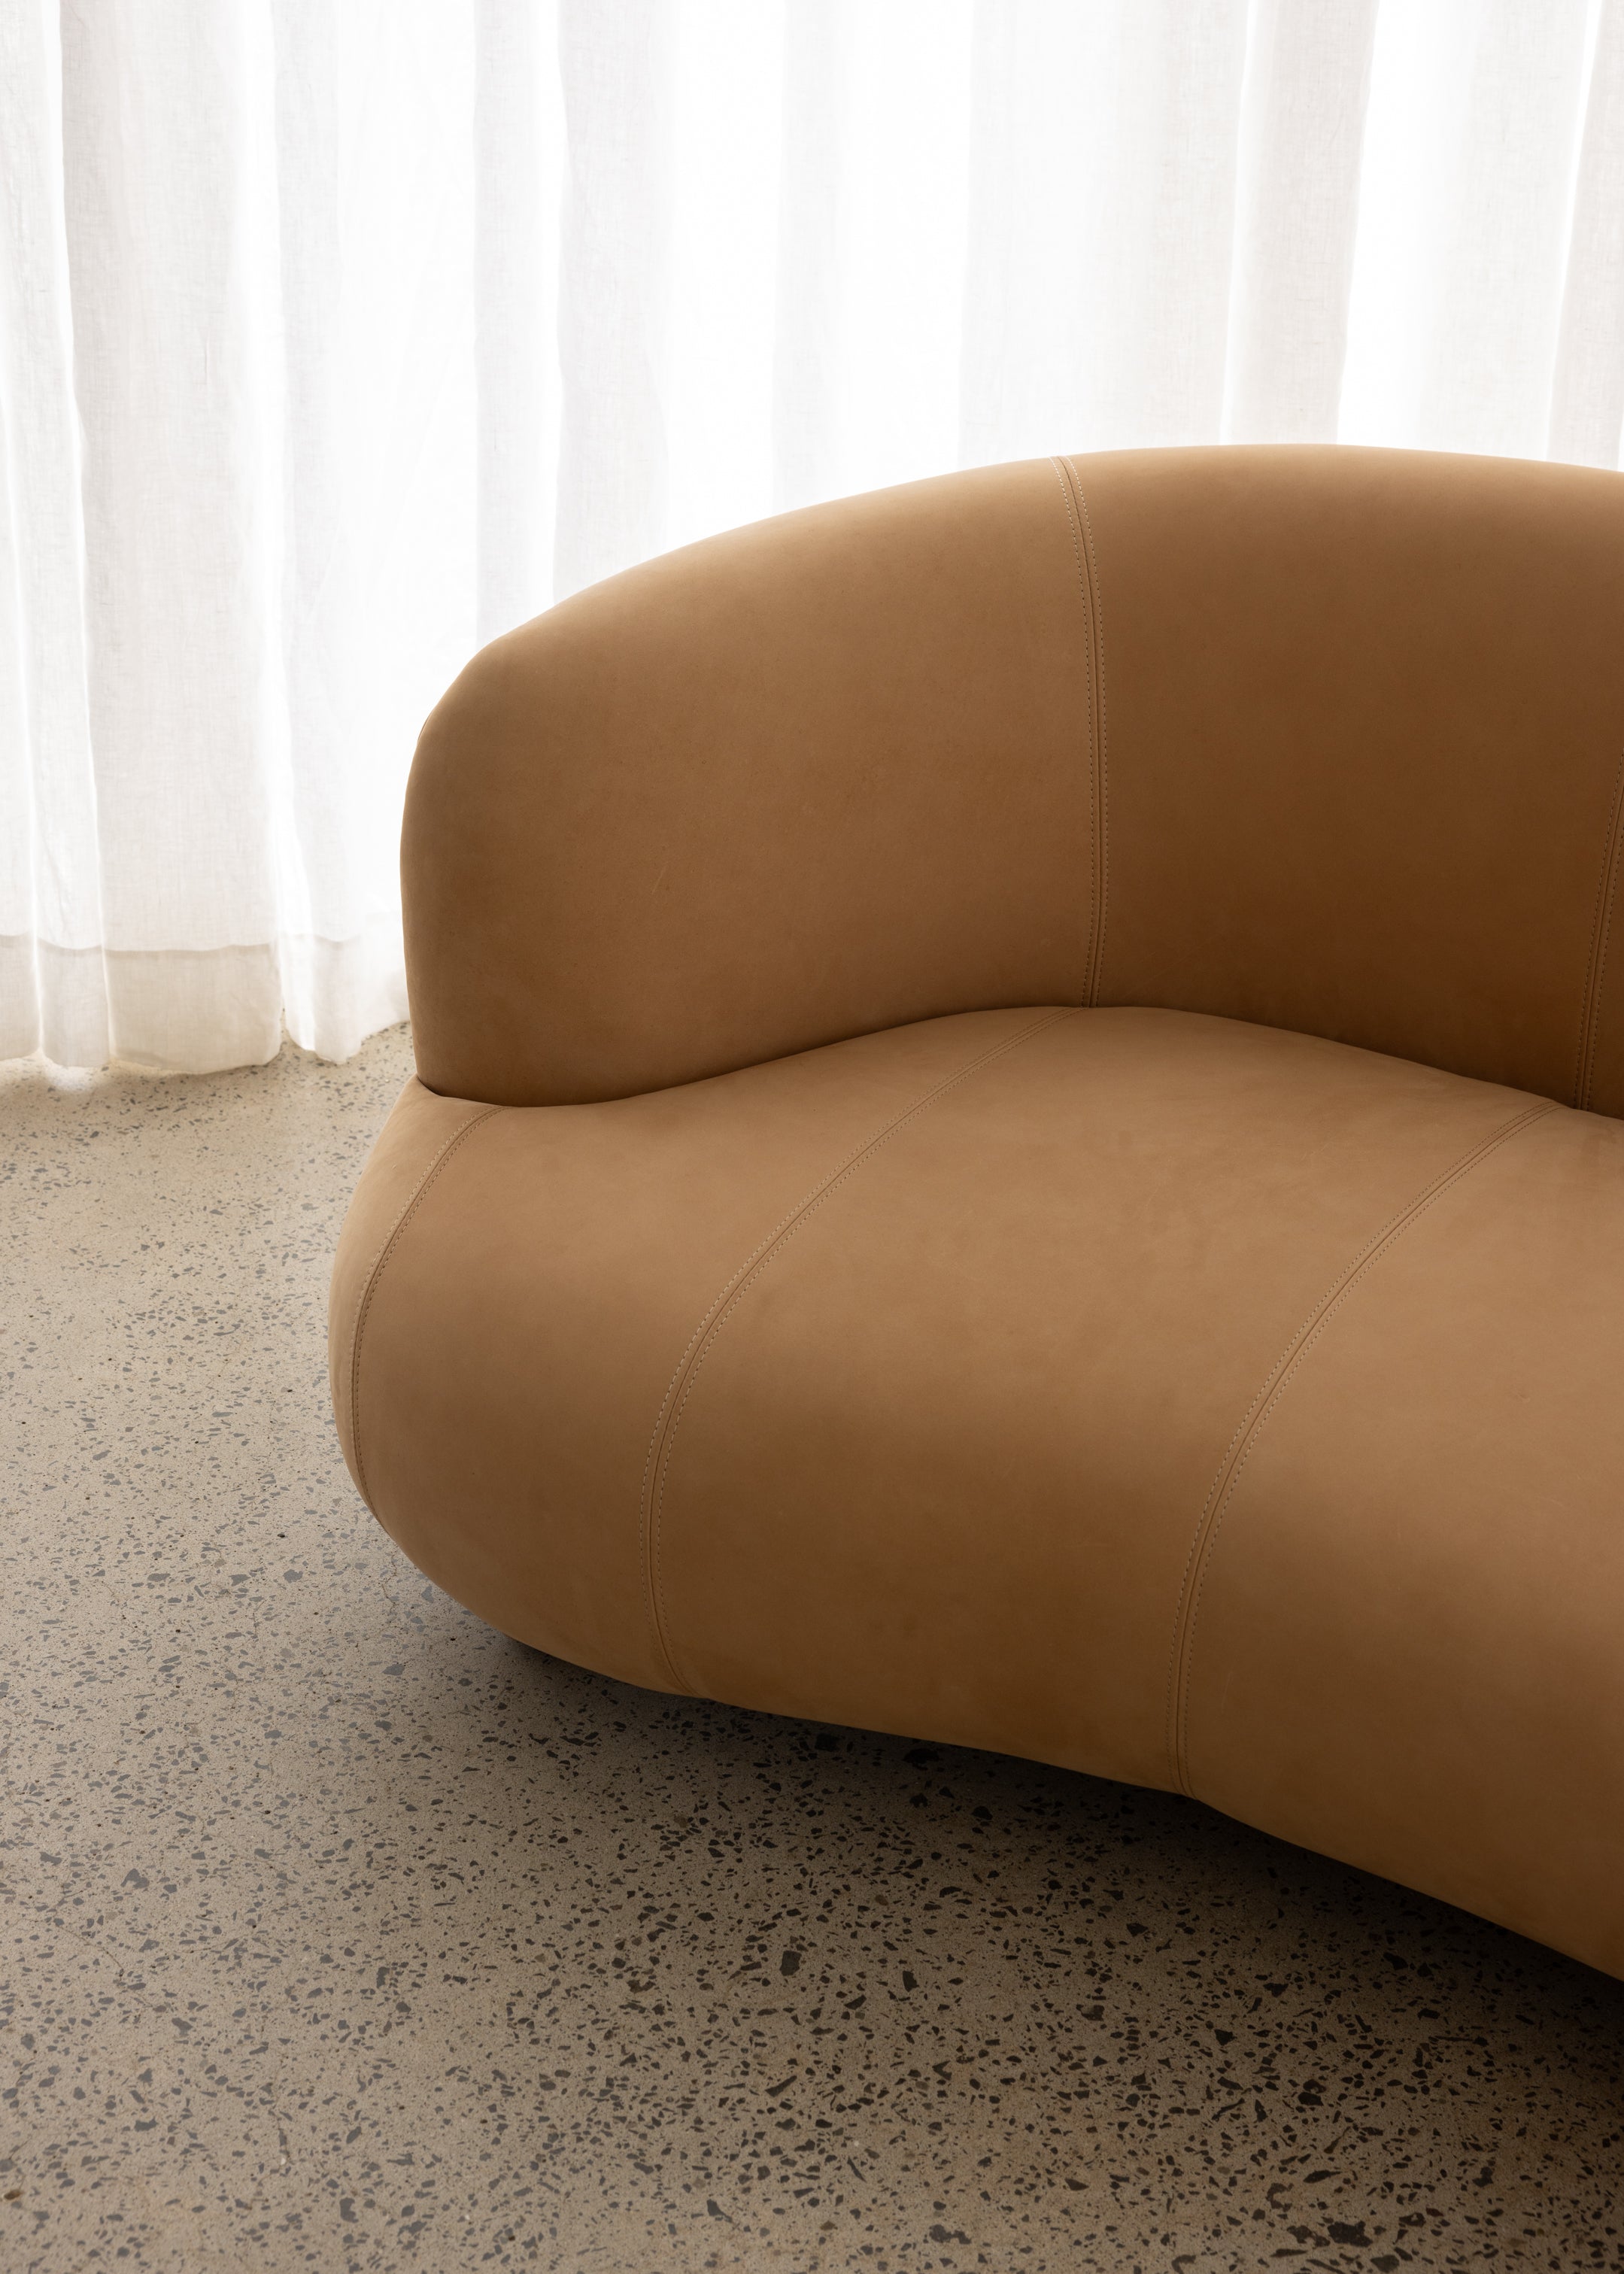 Tribecca Sofa 3 Seat / Leather / Latte